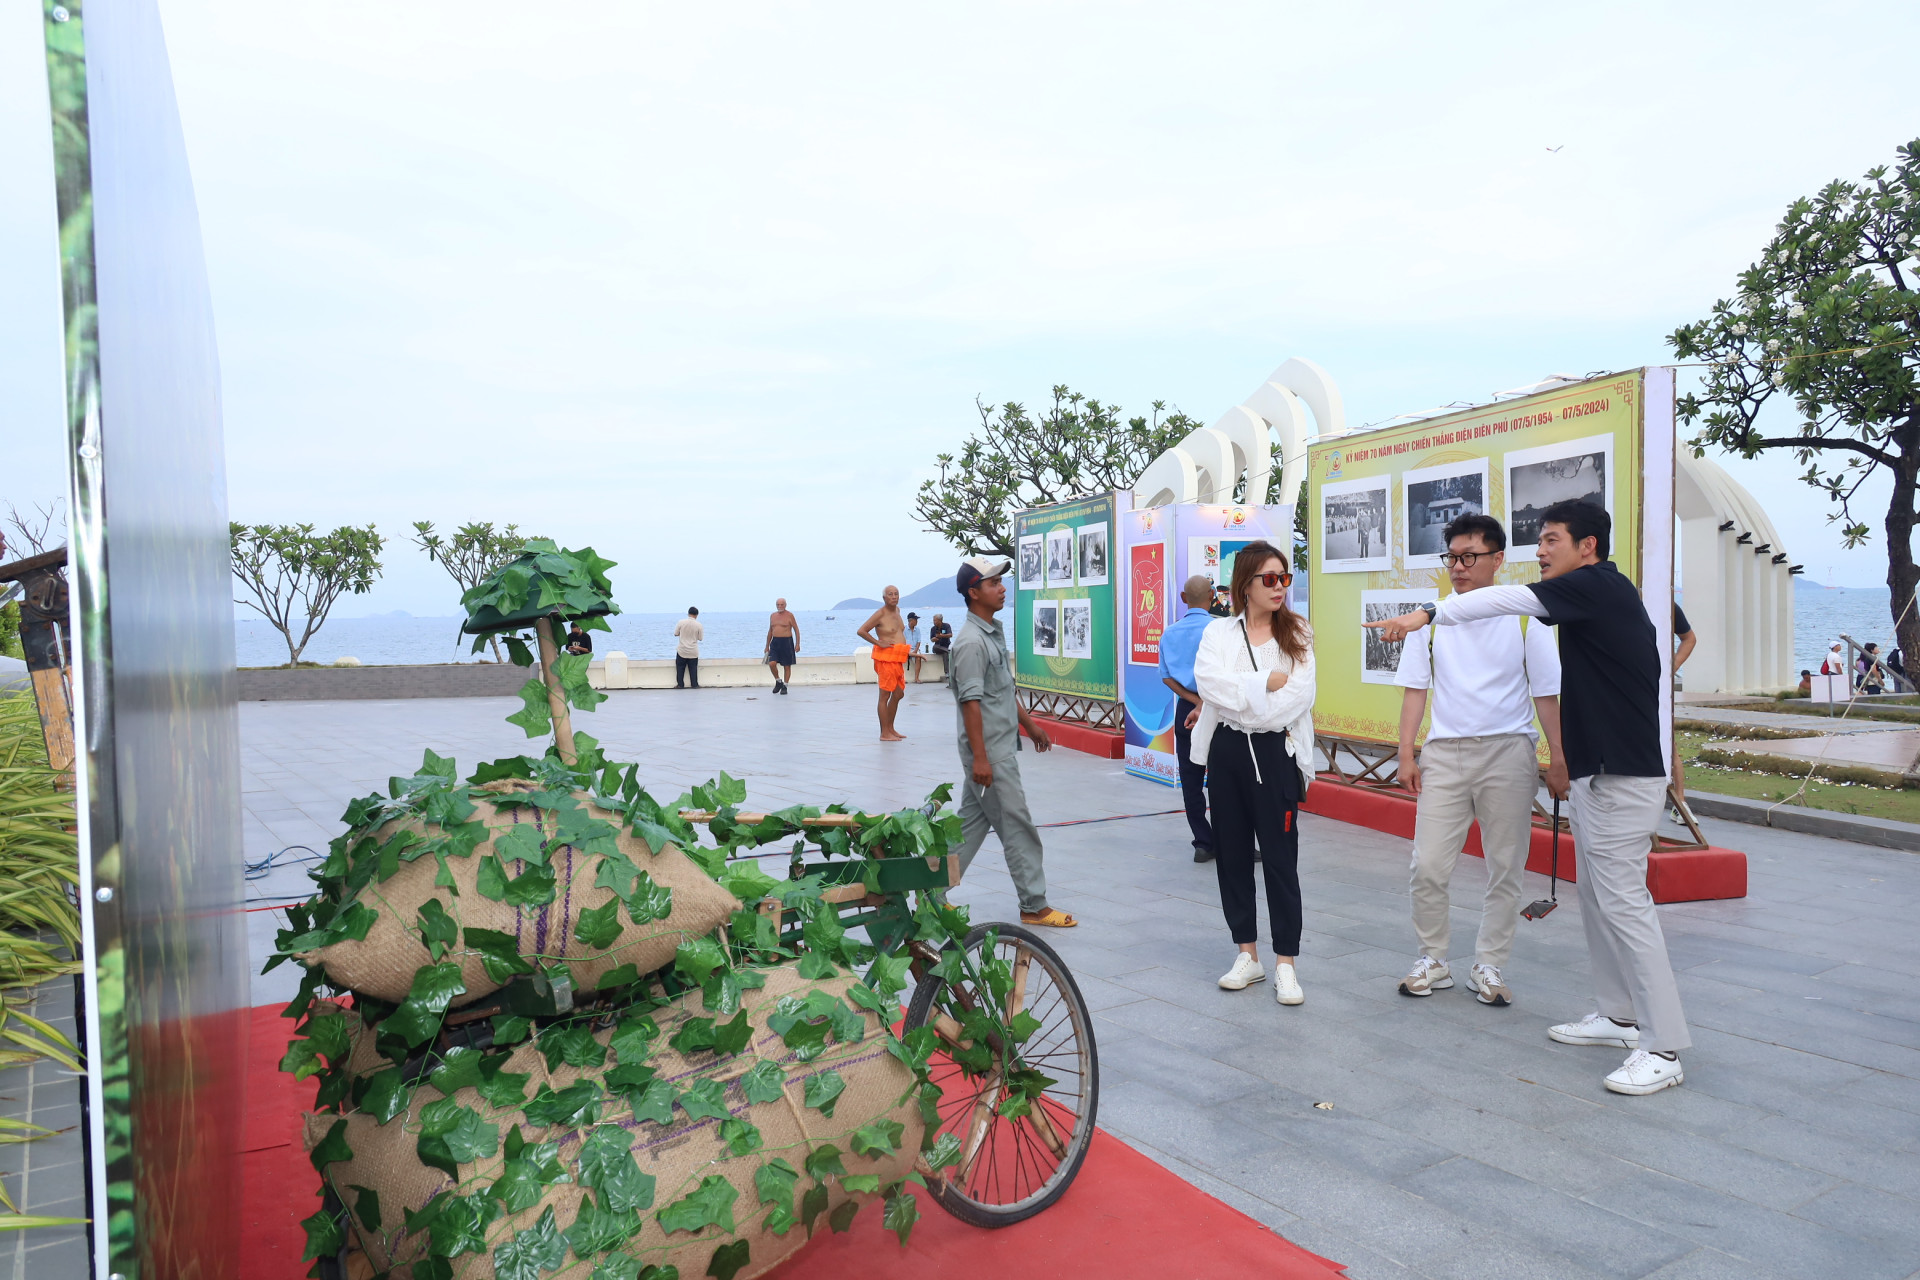 Du khách Hàn Quốc xem hình ảnh chiếc xe đạp thồ gắn với lực lượng dân công trong chiến dịch Điện Biên Phủ được giới thiệu tại triển lãm.